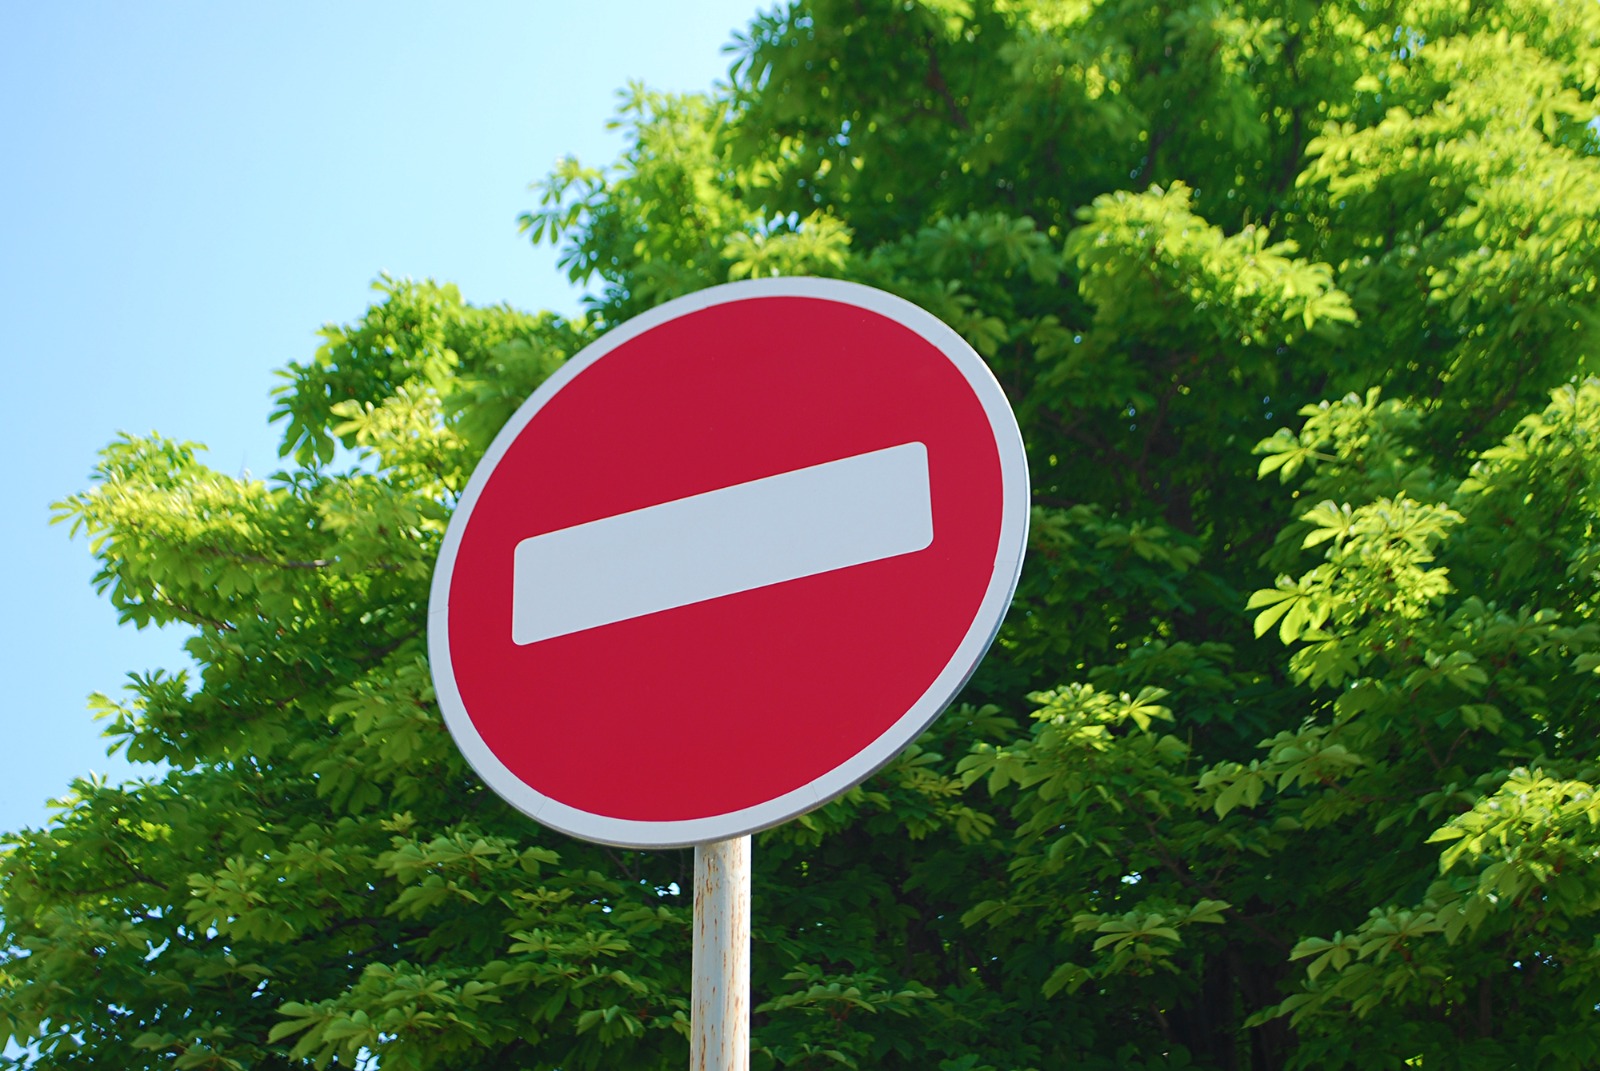 В Саранске 23 и 24 июня временно будет ограничено движение и исключена стоянка и остановка транспортных средств на некоторых участках улично-дорожной сети